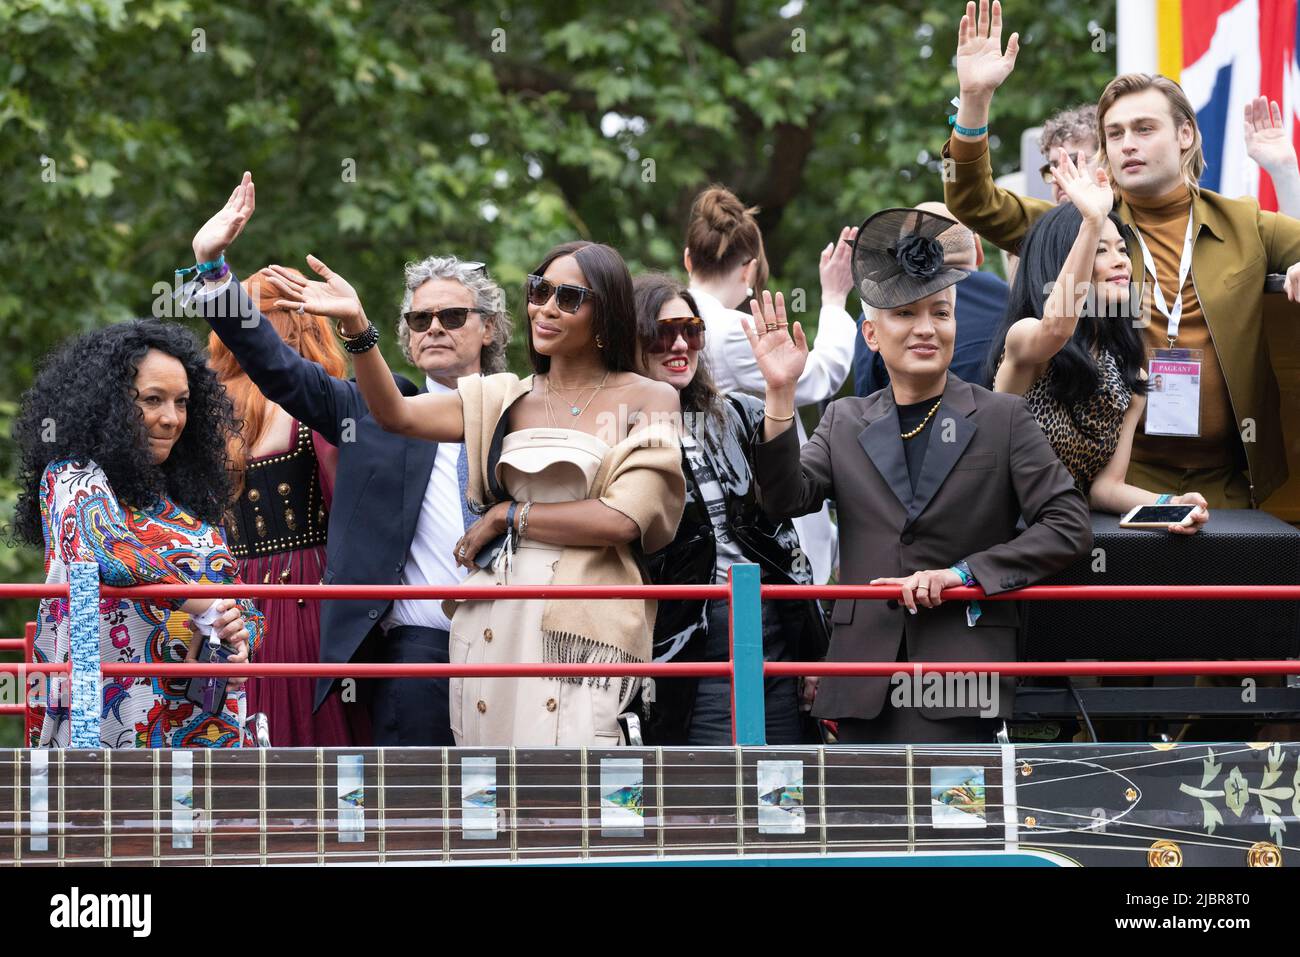 Il Platinum Jubilee Pageant si è tenuto domenica 5 giugno 2022 nei pressi di Buckingham Palace, nell'ambito delle celebrazioni del Platinum Jubilee della Regina Elisabetta II. Foto Stock